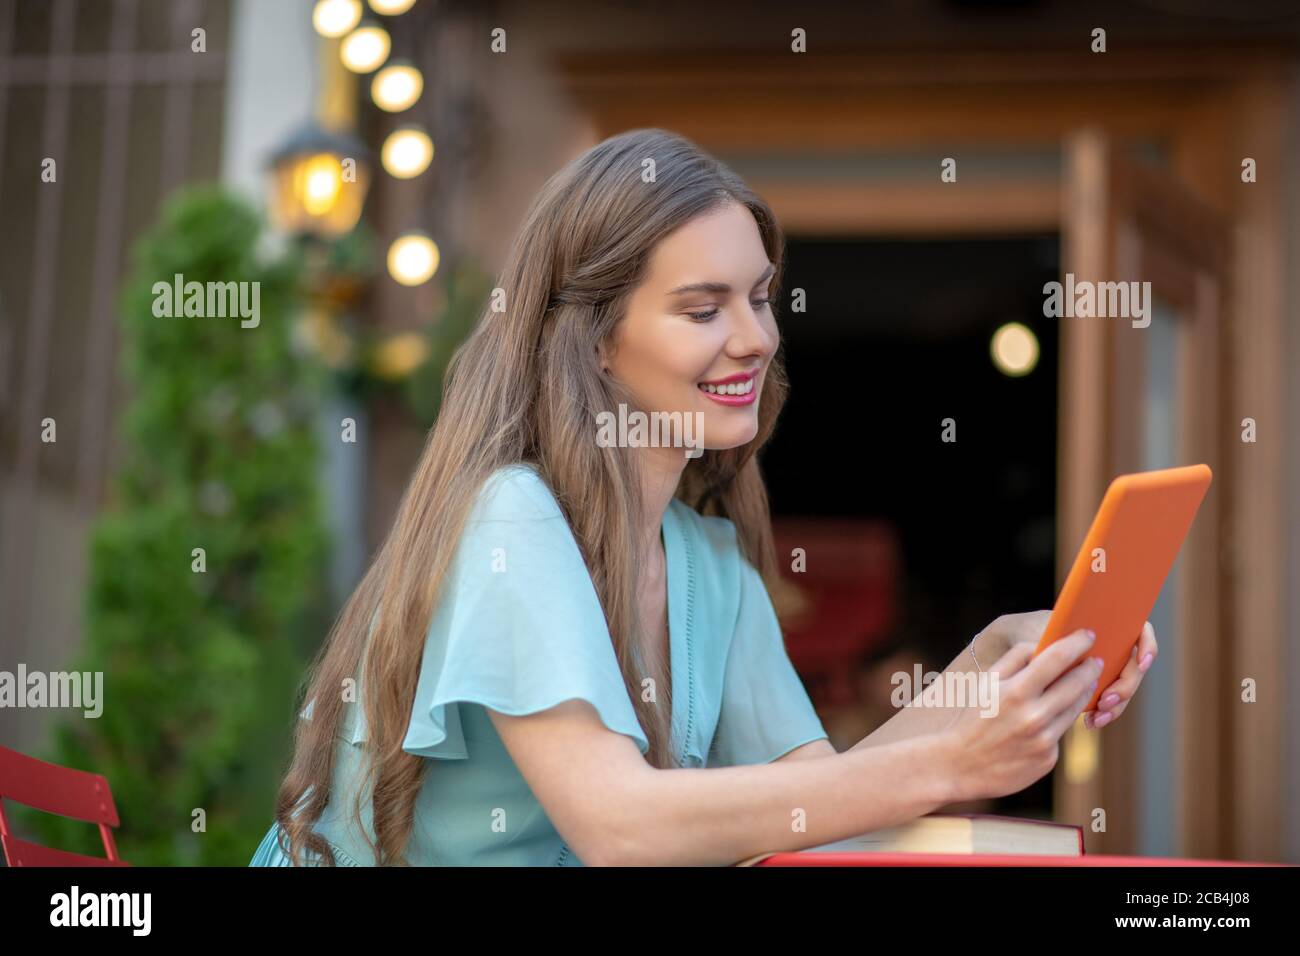 Femme romantique assise dans un café en plein air, avec une tablette orange Banque D'Images